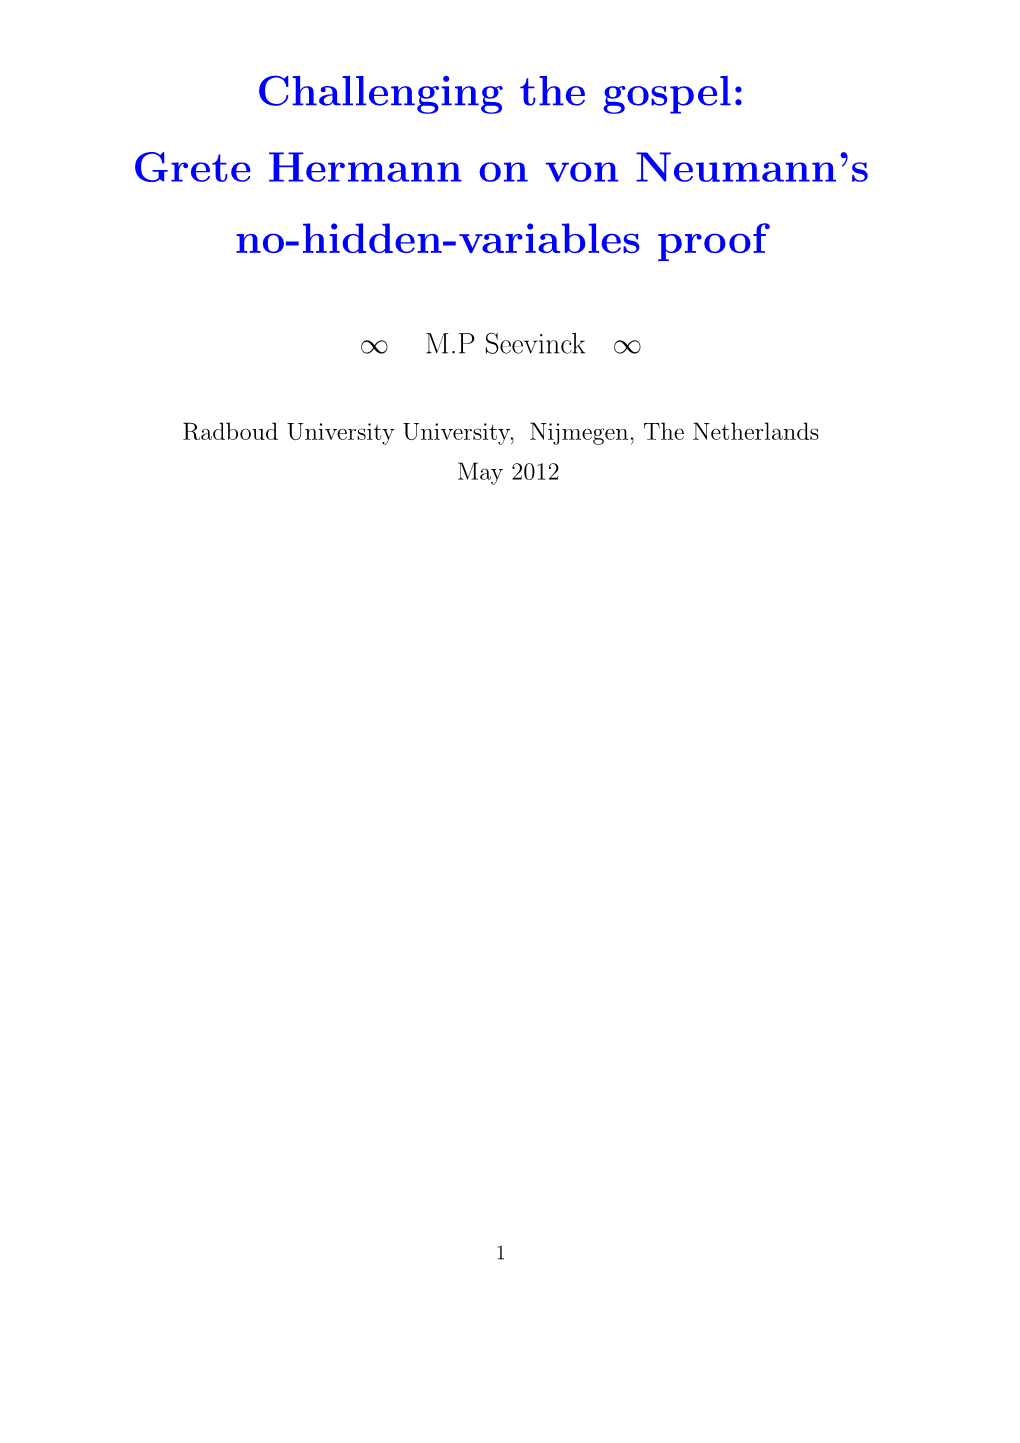 Grete Hermann on Von Neumann's No-Hidden-Variables Proof